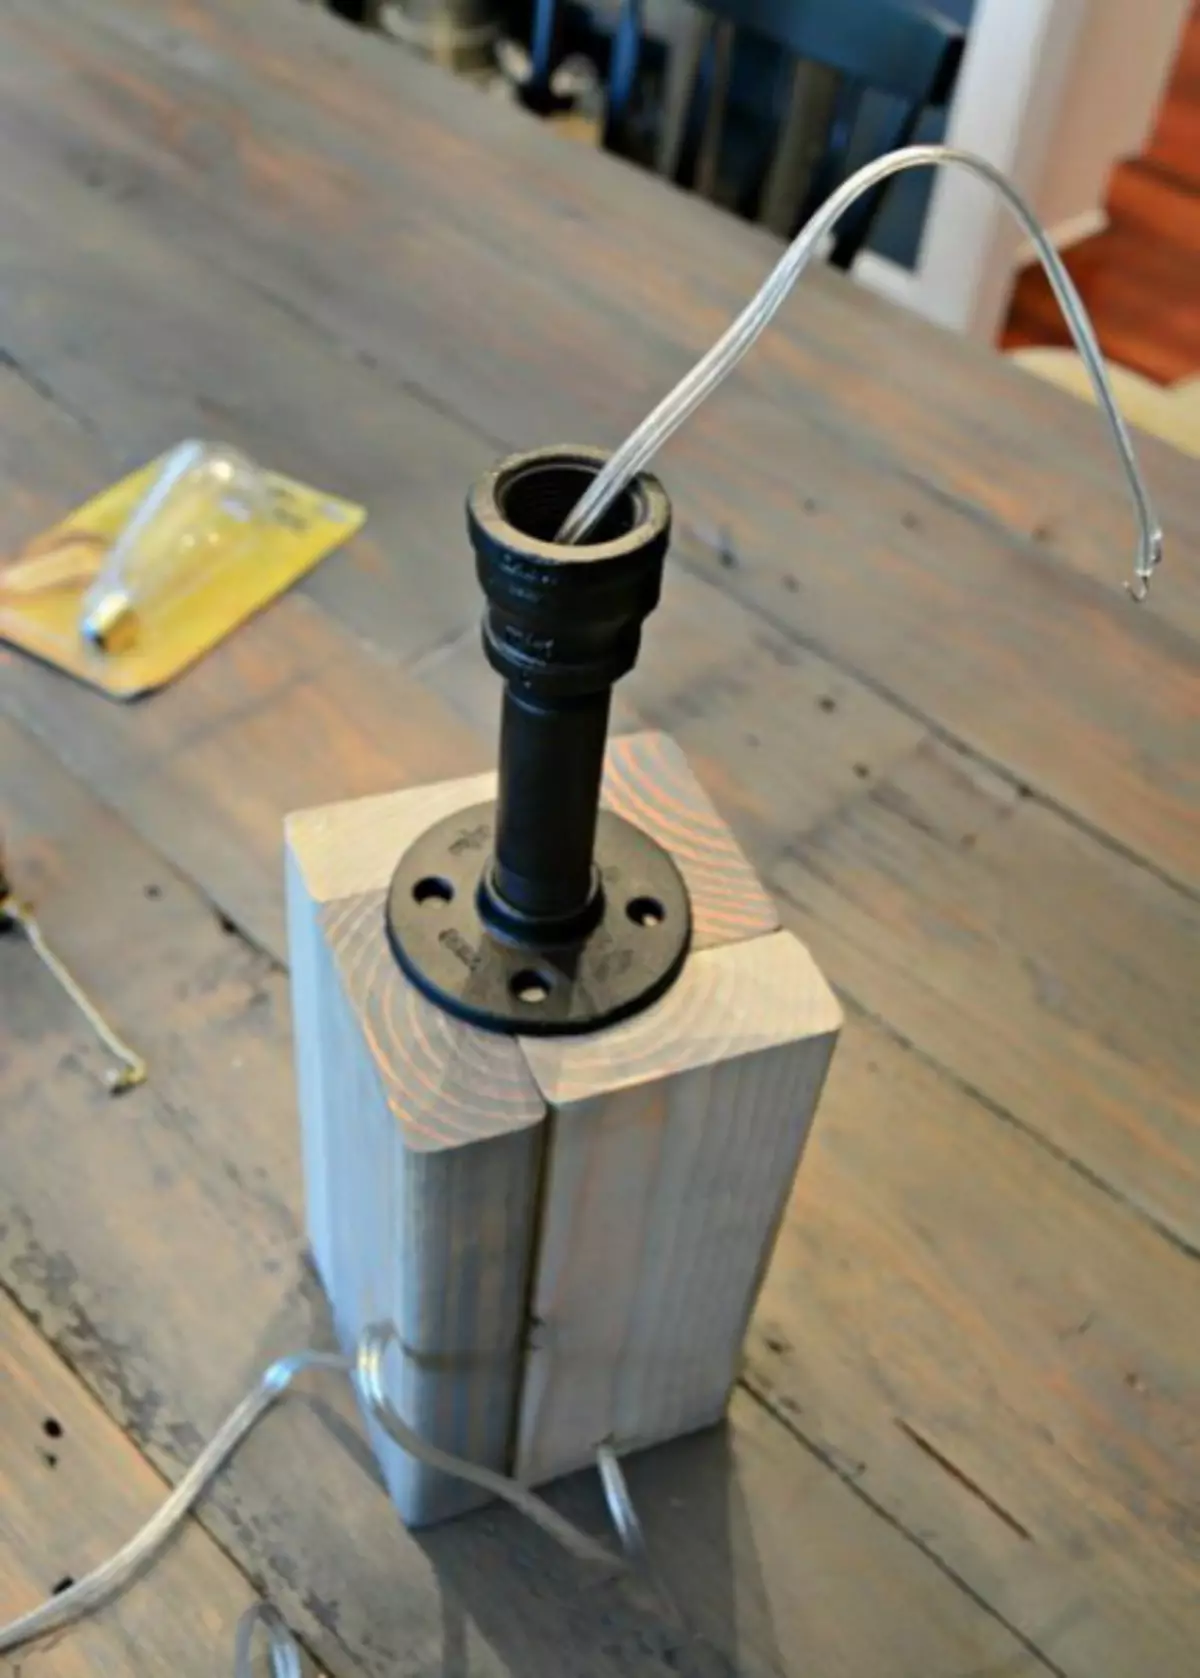 લાકડાના બેઝ (માસ્ટર ક્લાસ, ફોટો) સાથે ડેસ્ક લેમ્પ કેવી રીતે બનાવવી